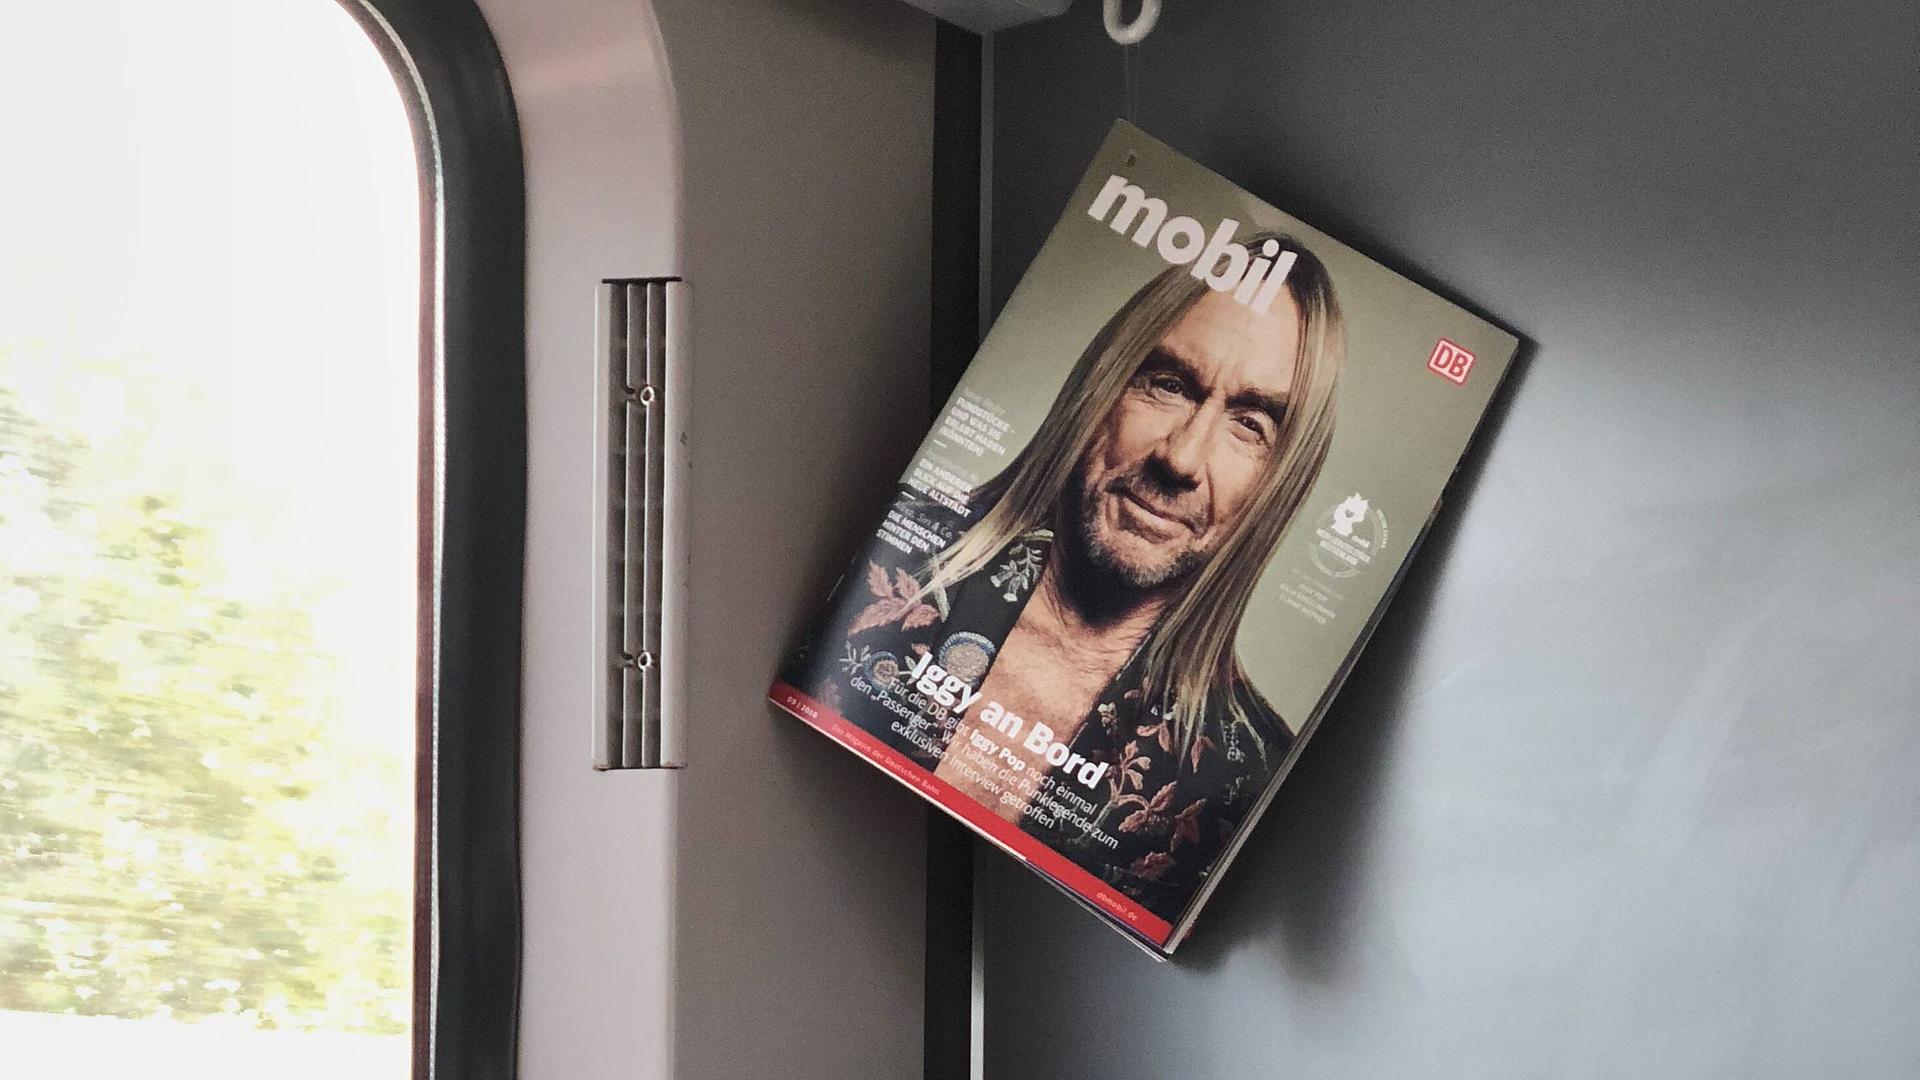 Eine Ausgabe des Kundenmagazin "DB mobil" hängt in einem Abteil der Deutschen Bahn. Auf dem Cover ist der Musiker Iggy Pop zu sehen.